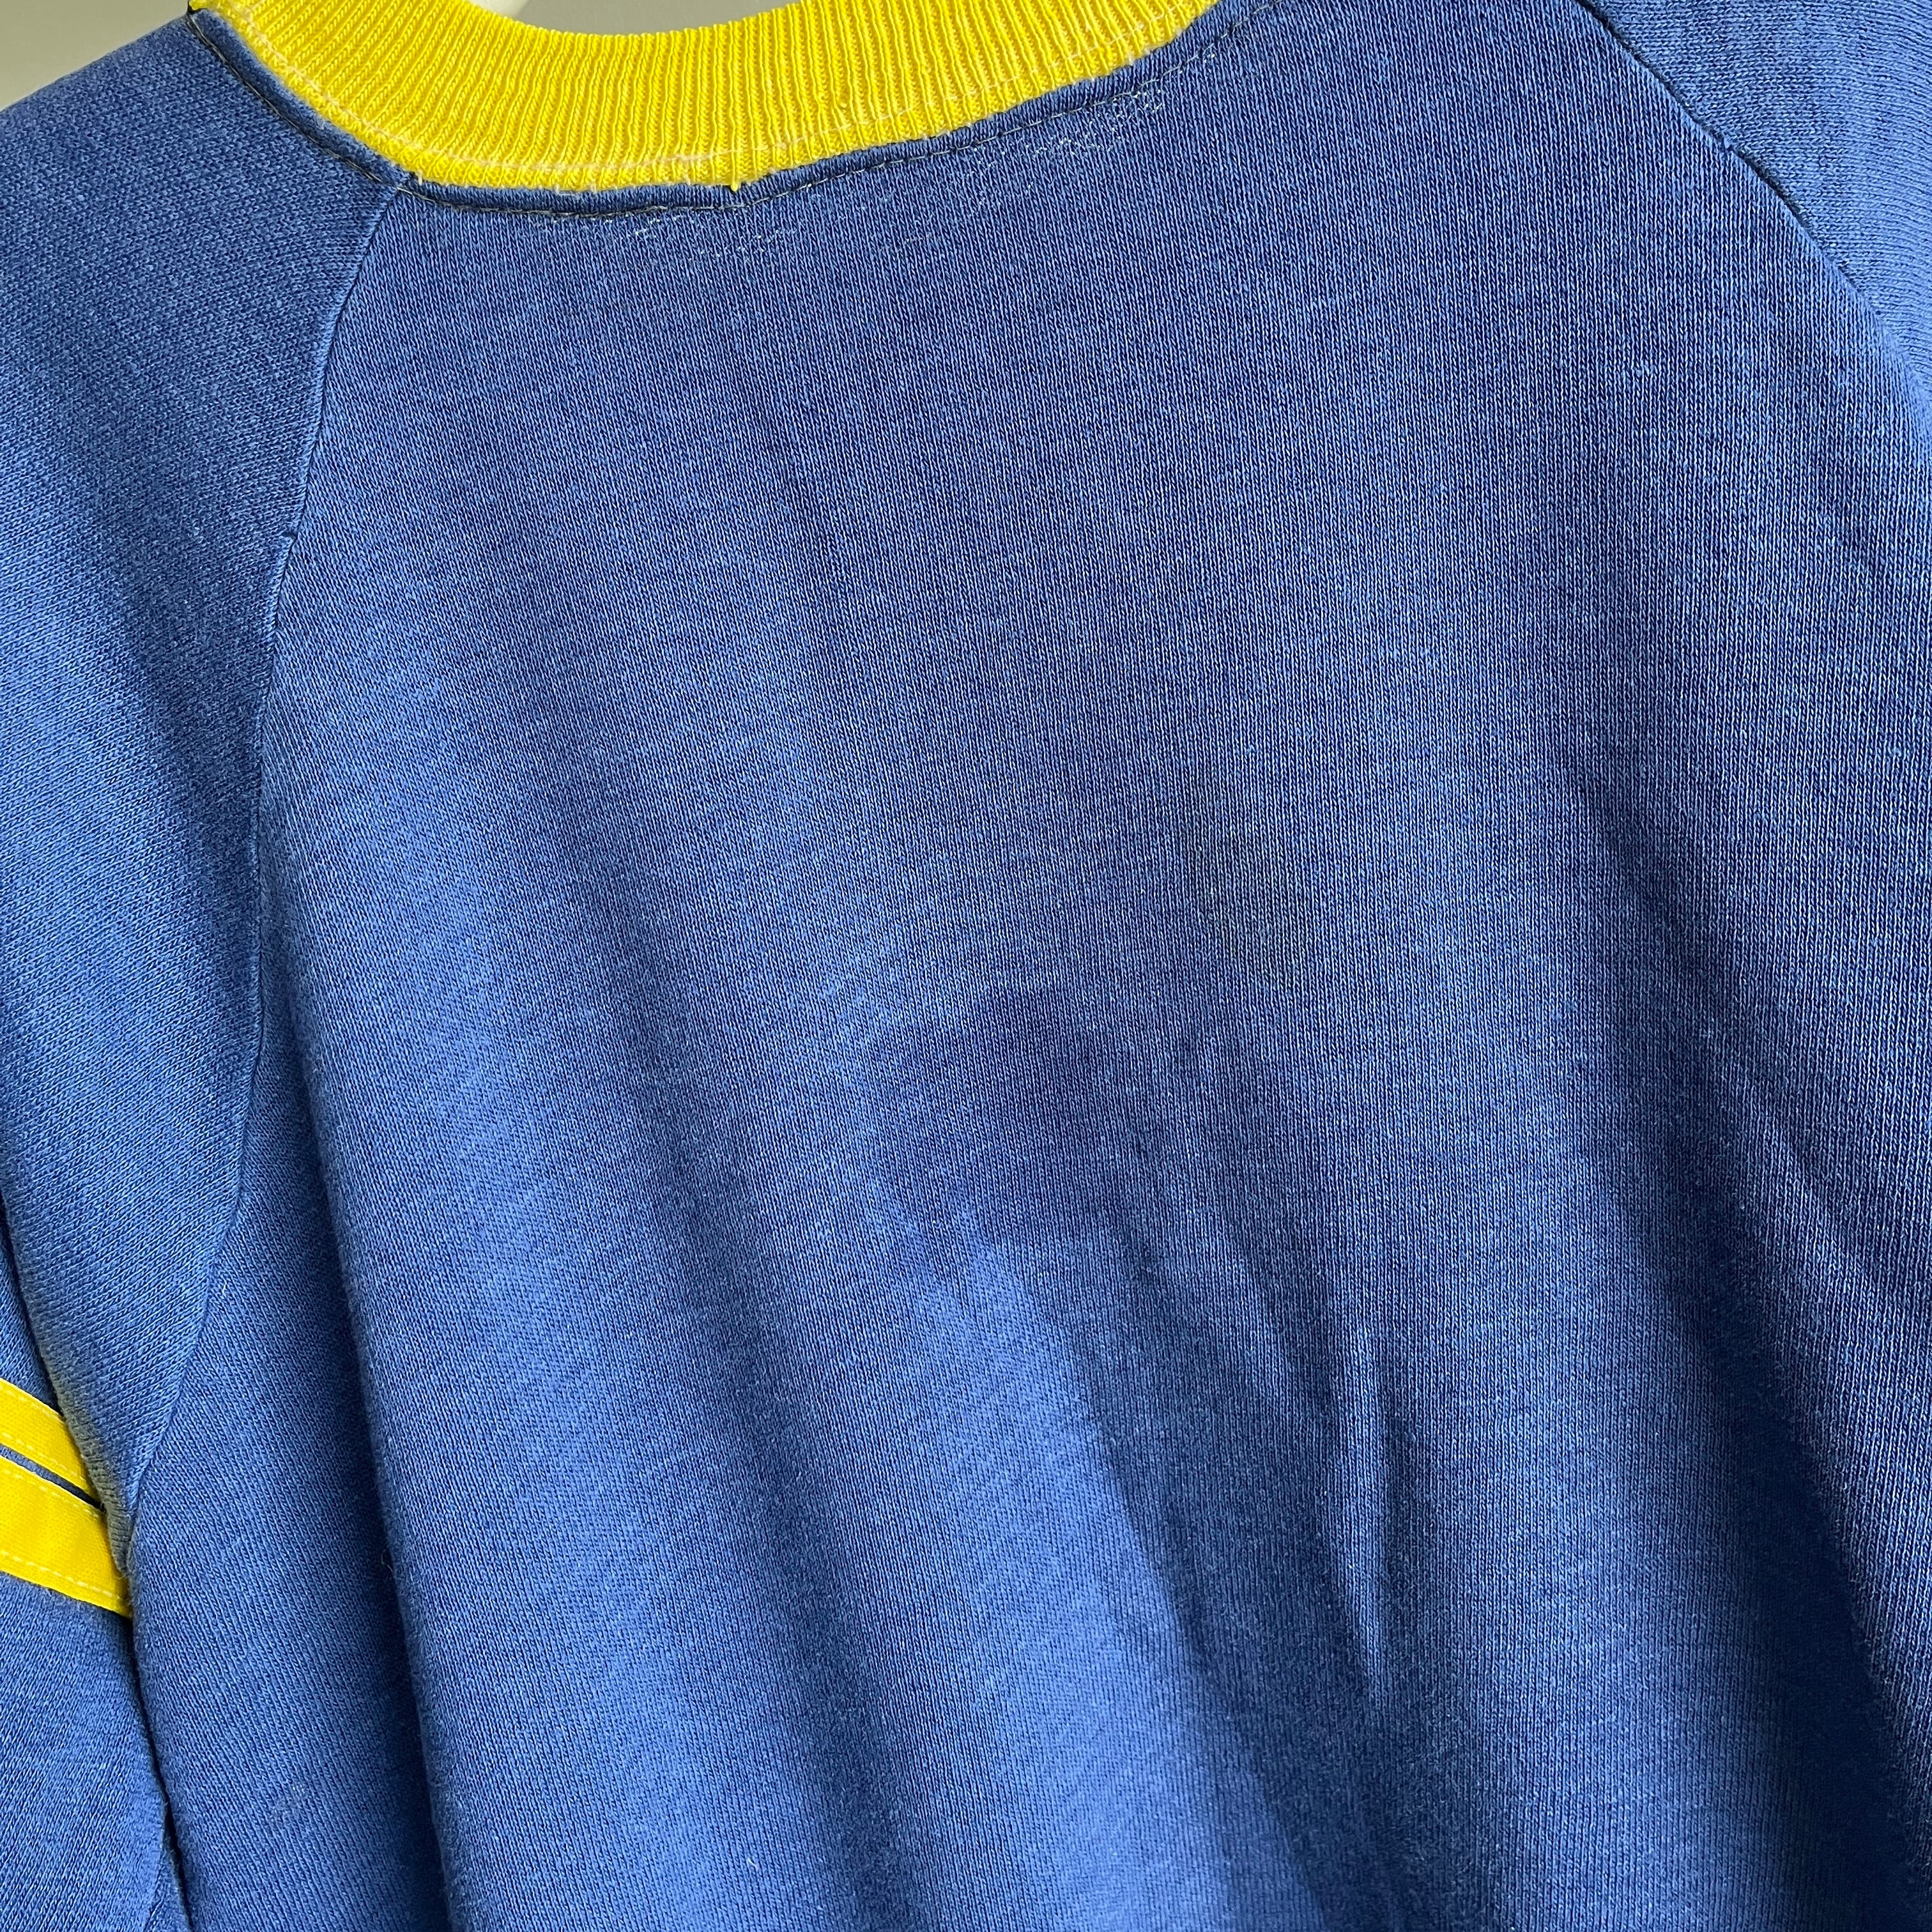 Sweat-shirt bleu marine et jaune super fin et réparé des années 1970 - Collection personnelle